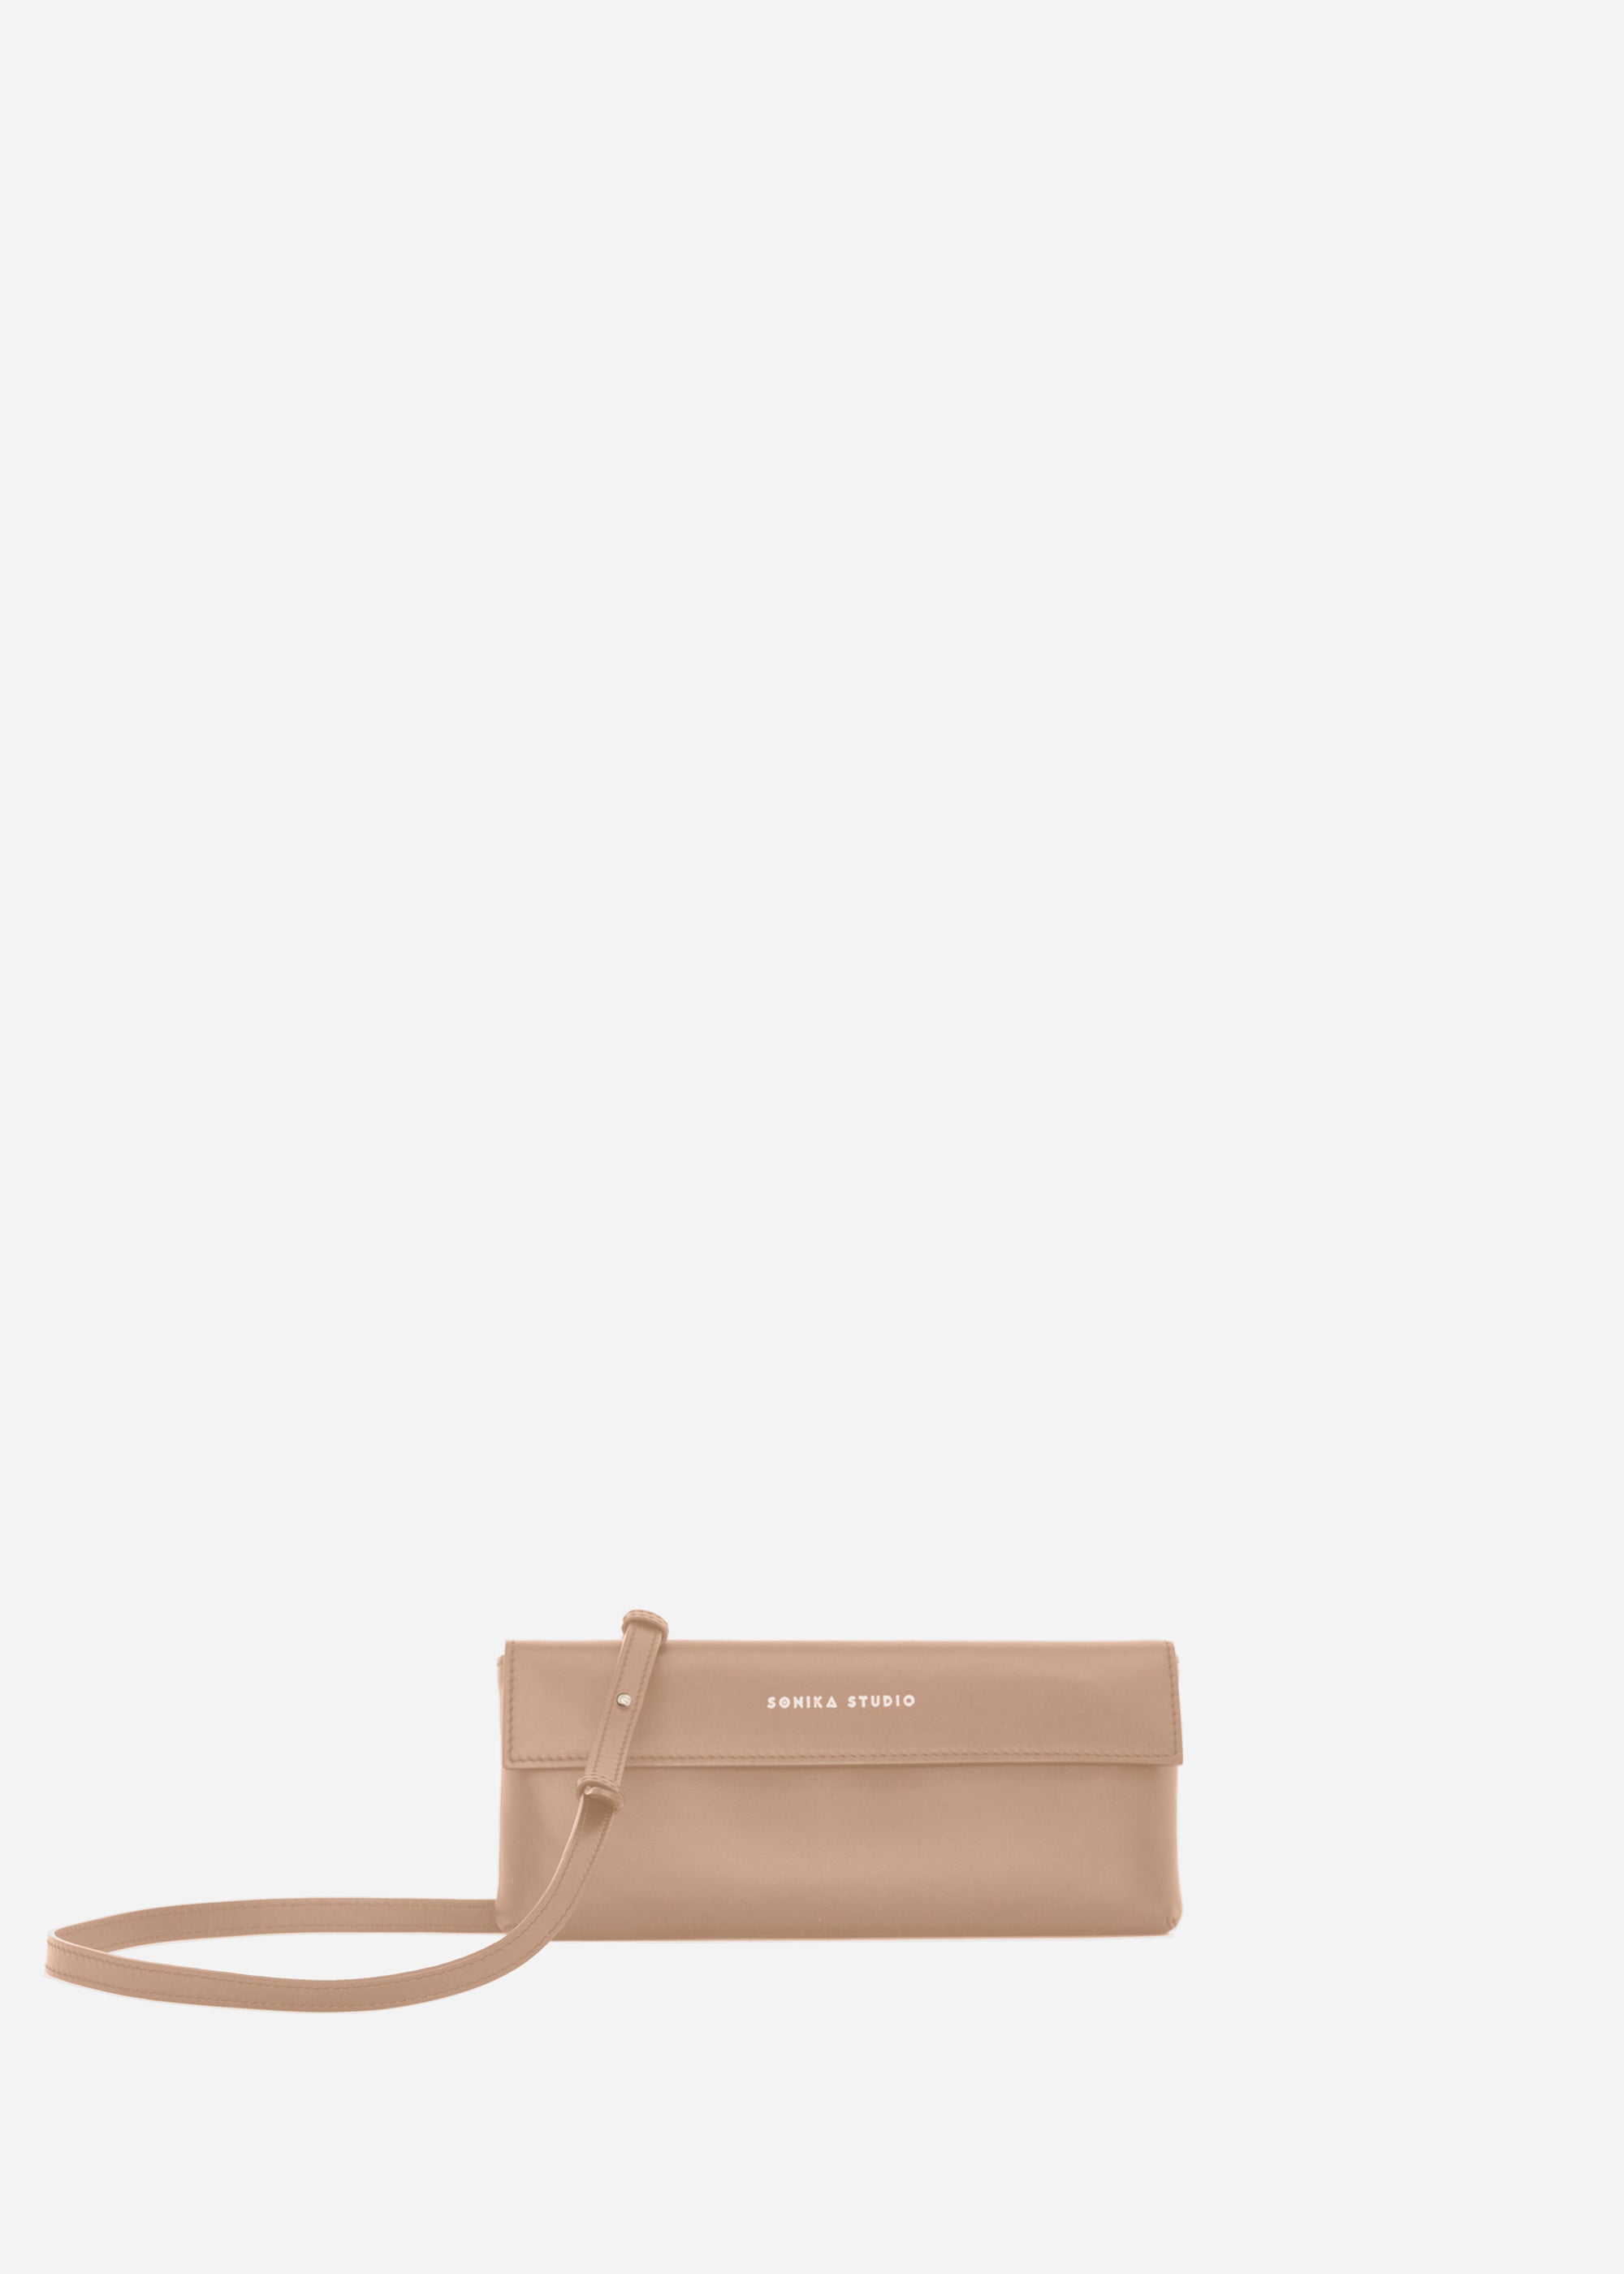 Mini bag Sokhaya - Hazelnut leather